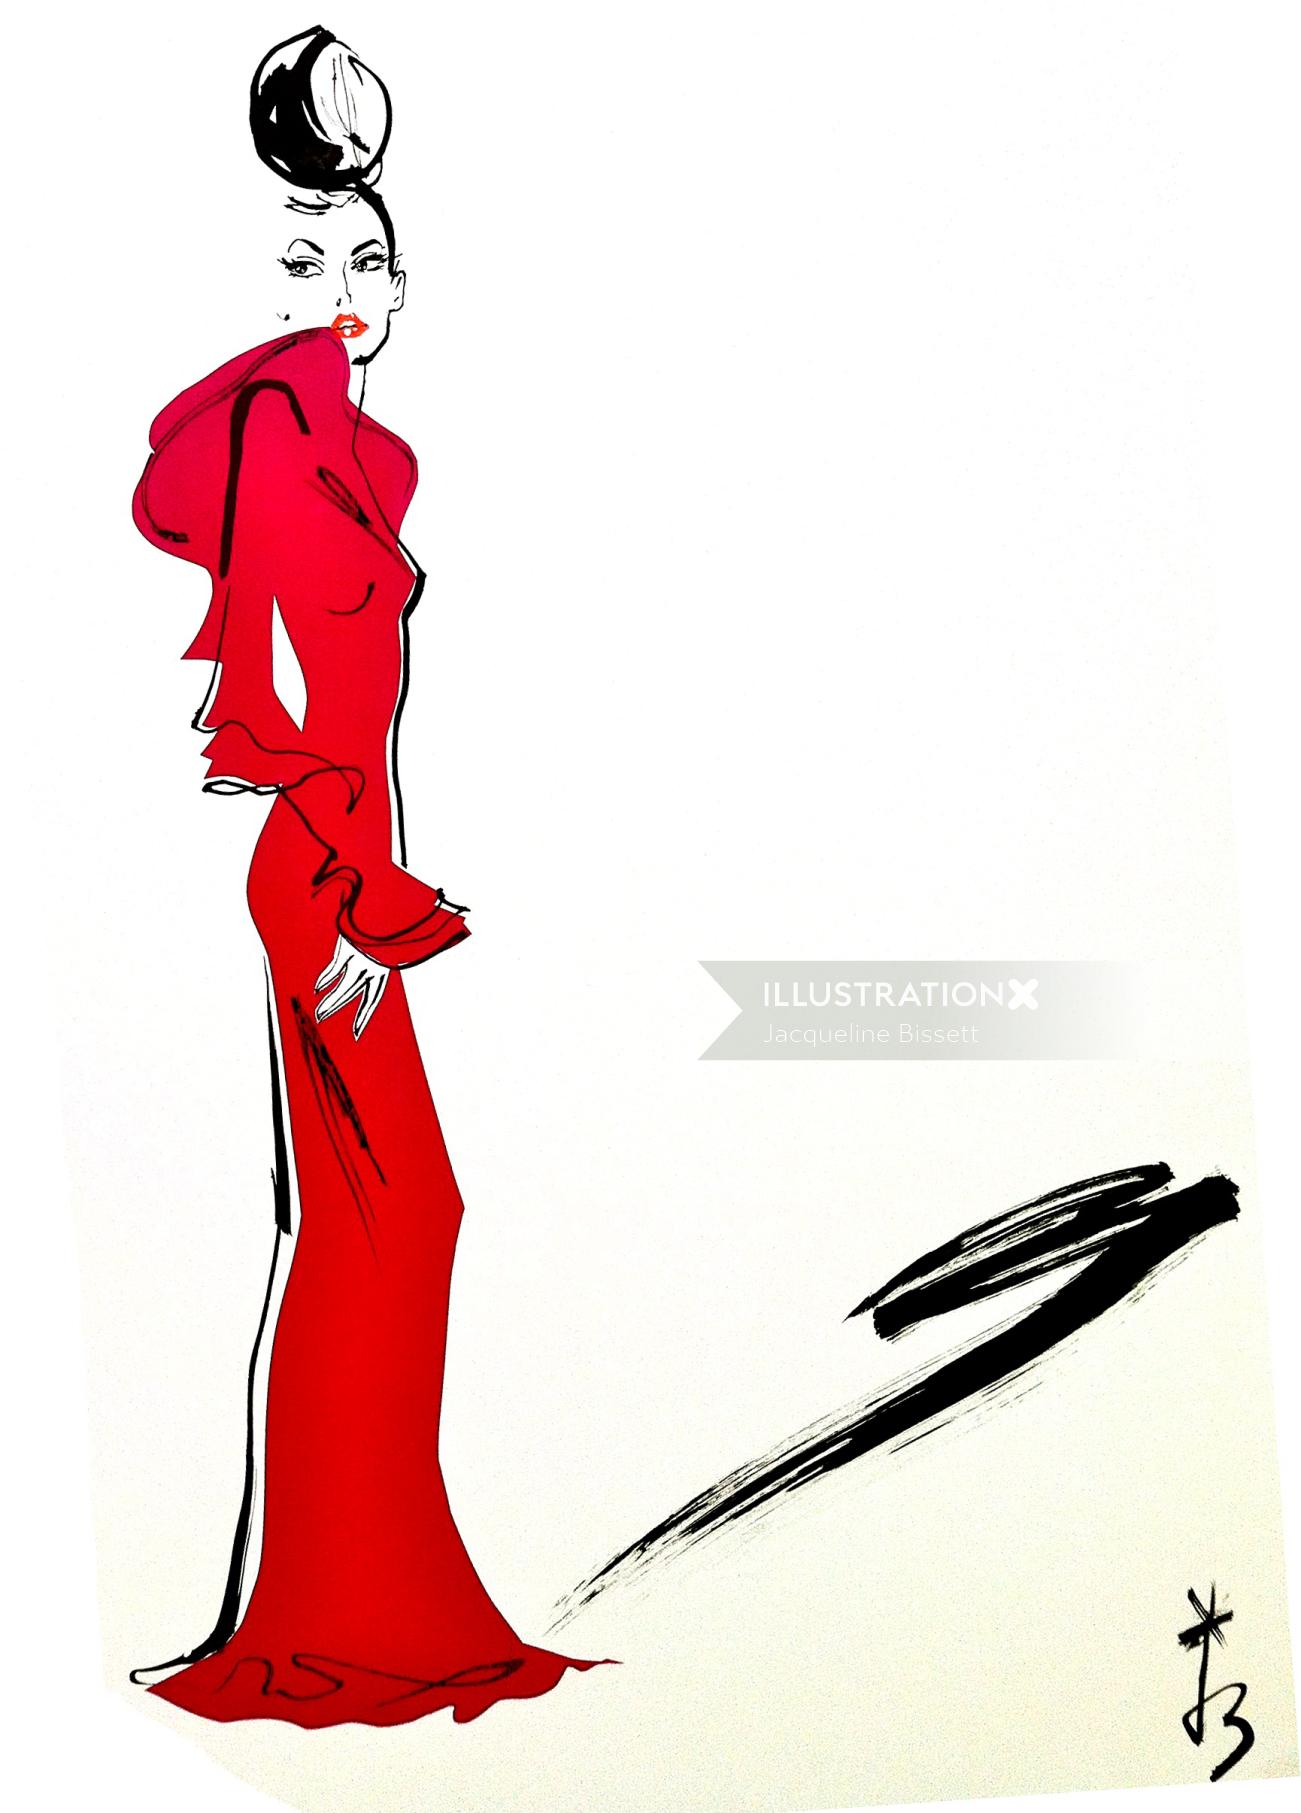 Senhora de vermelho, ilustração de moda de Jacqueline Bissett